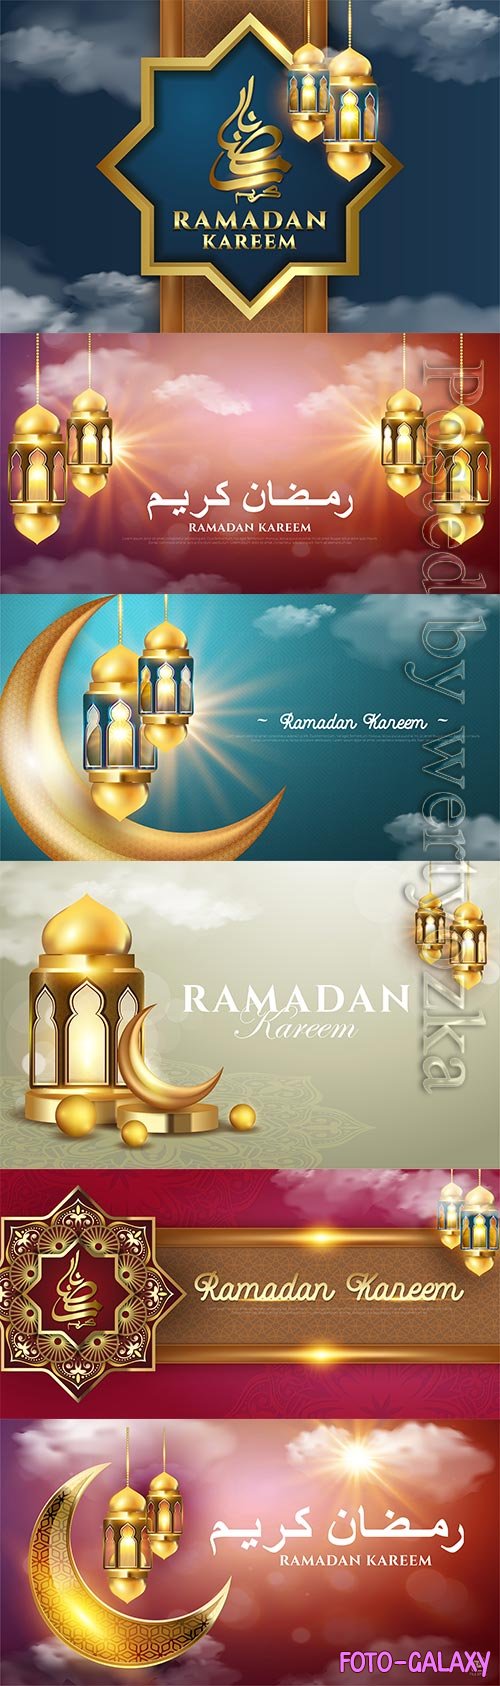 Islamic Ramadan kareem card vector design